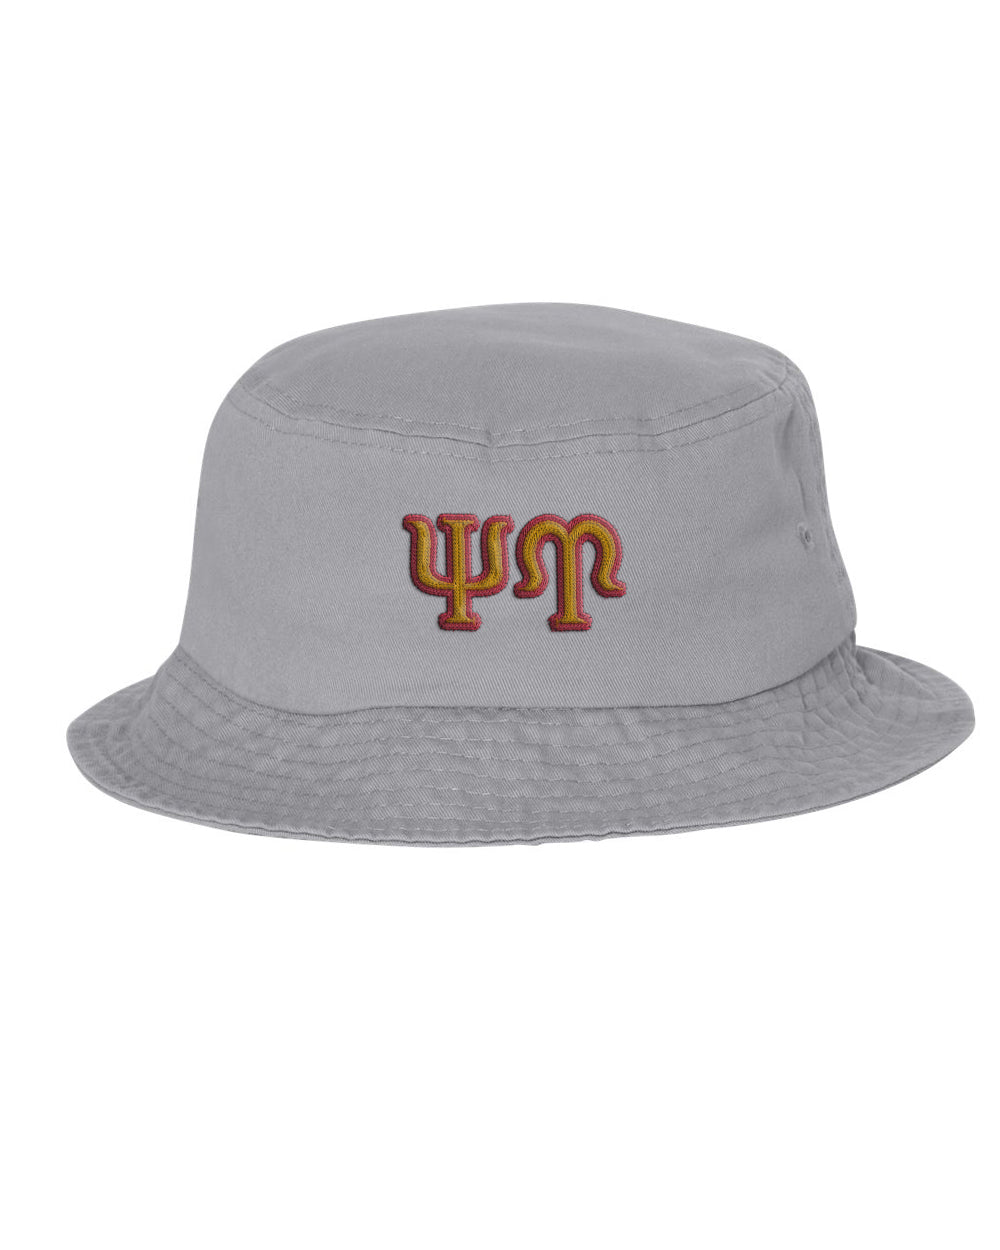 Psi Upsilon Embroidered Bucket Hat